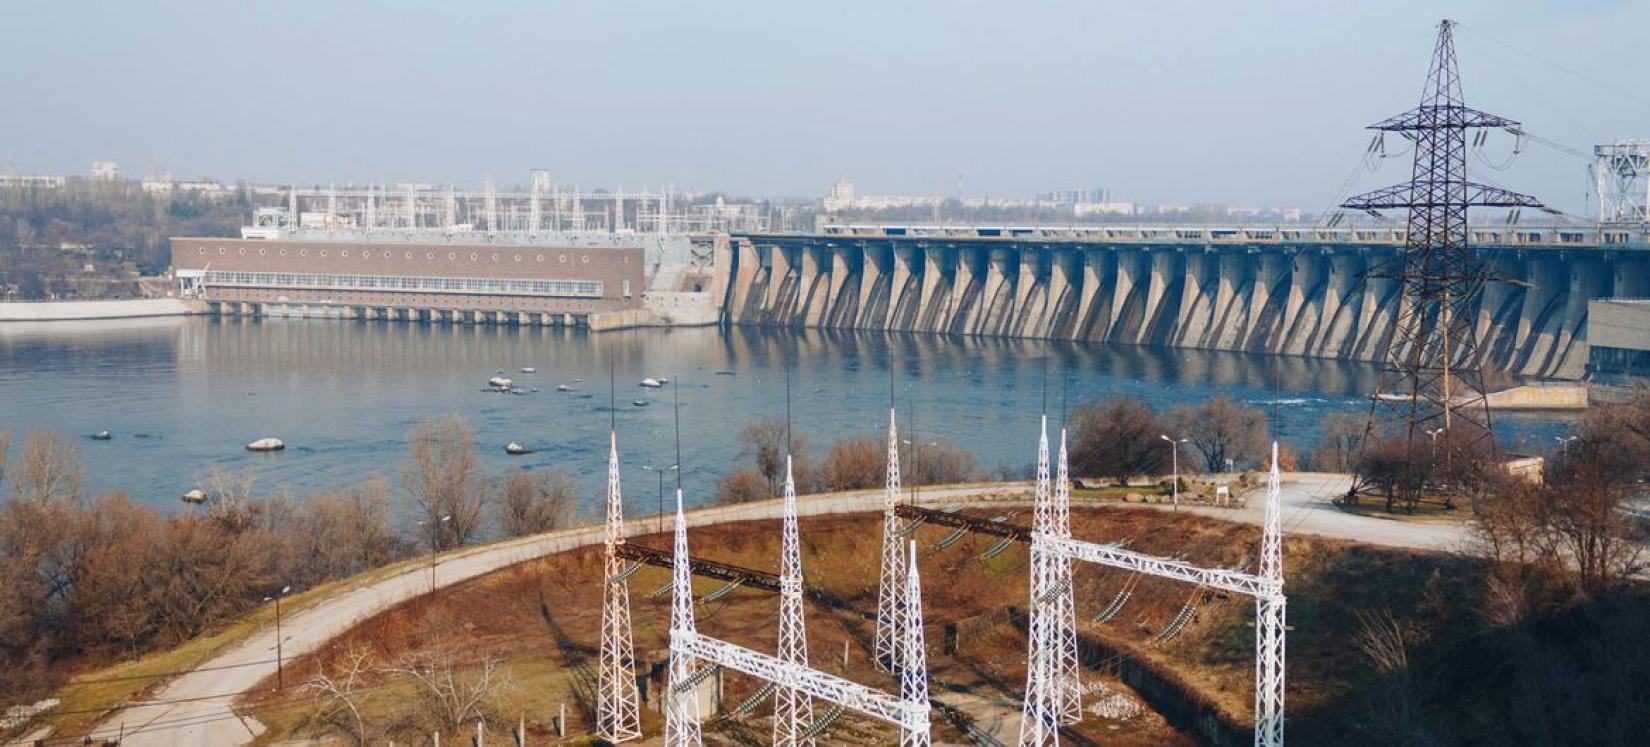 Vista panorâmica da estação hidrelétrica em Zaporizhzhia, na Ucrânia.